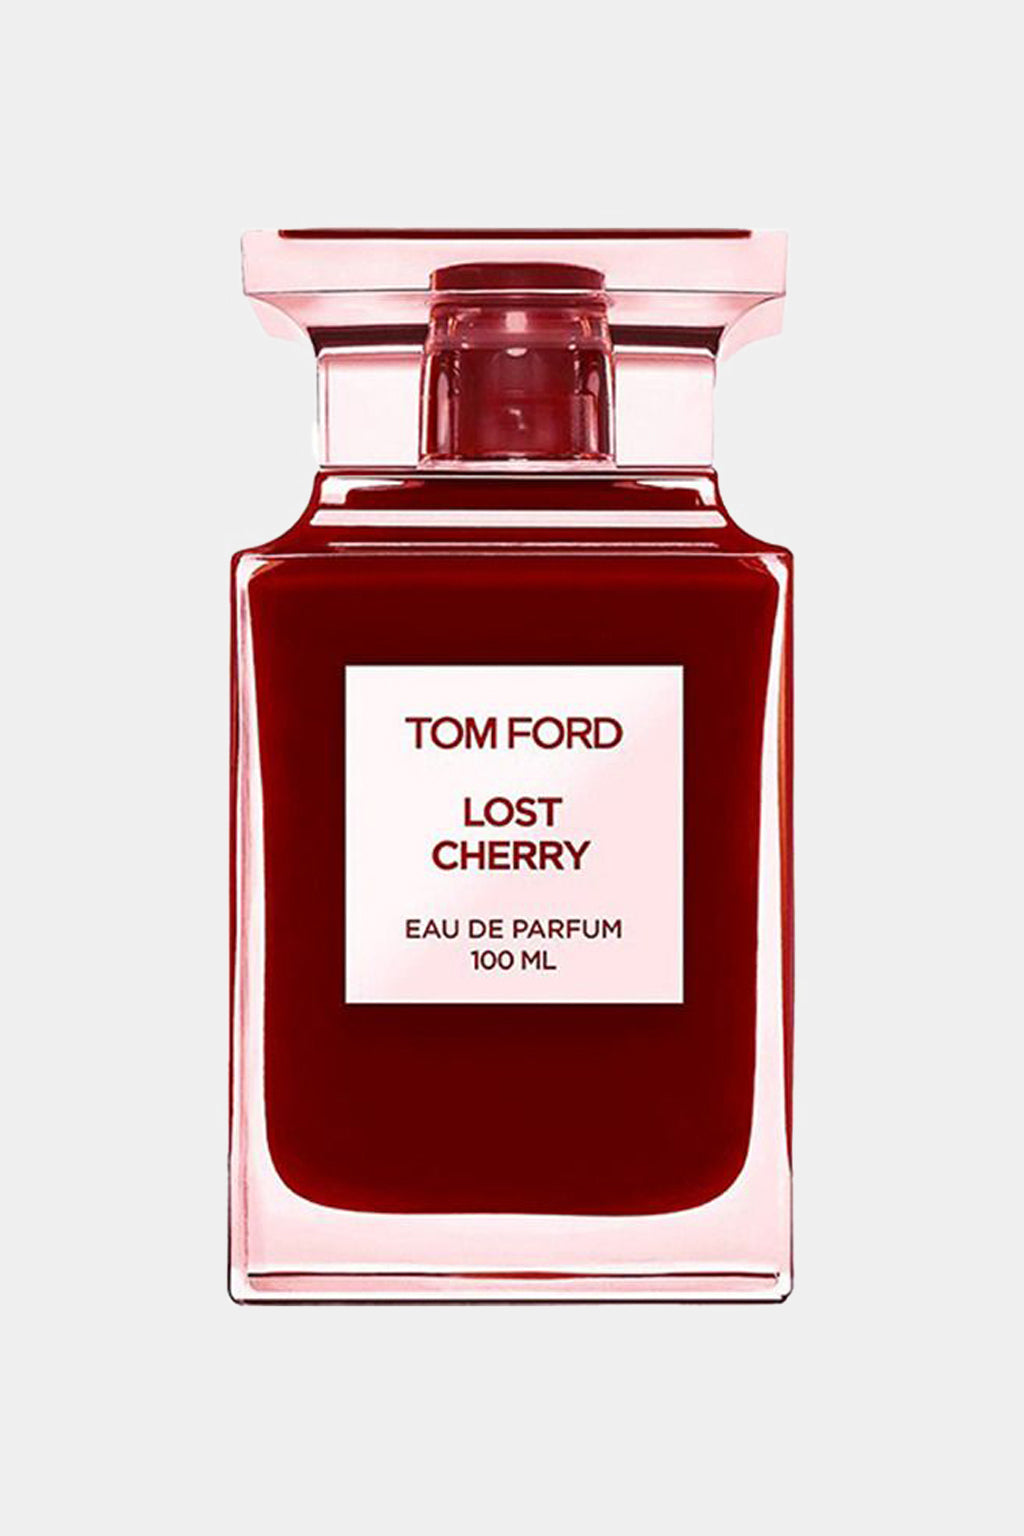 Tom Ford - Lost Cherry Eau de Parfum